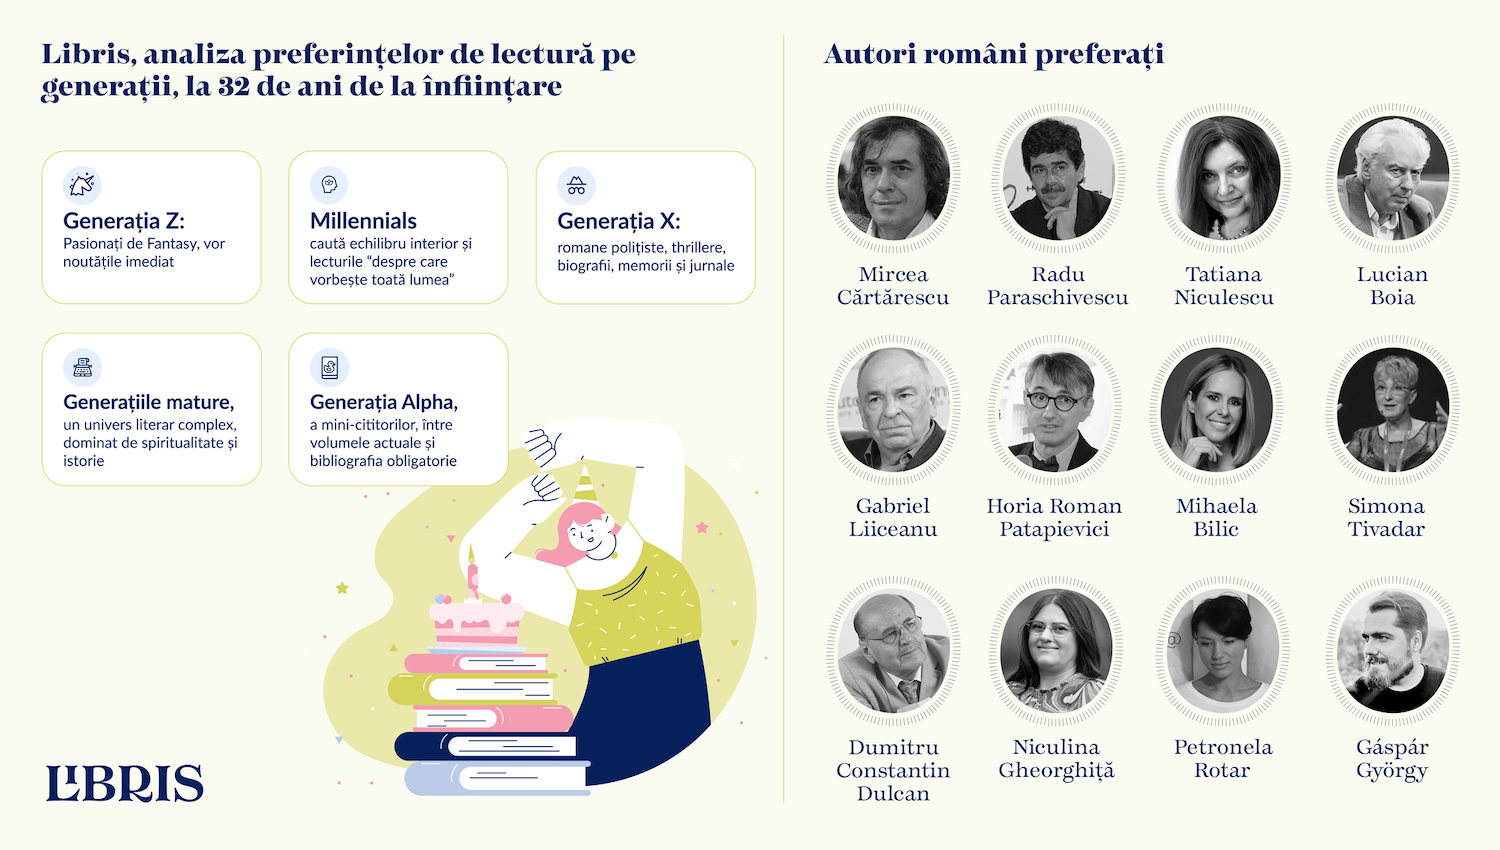 Libris 32 ani analiza preferințelor de lectură pe generații